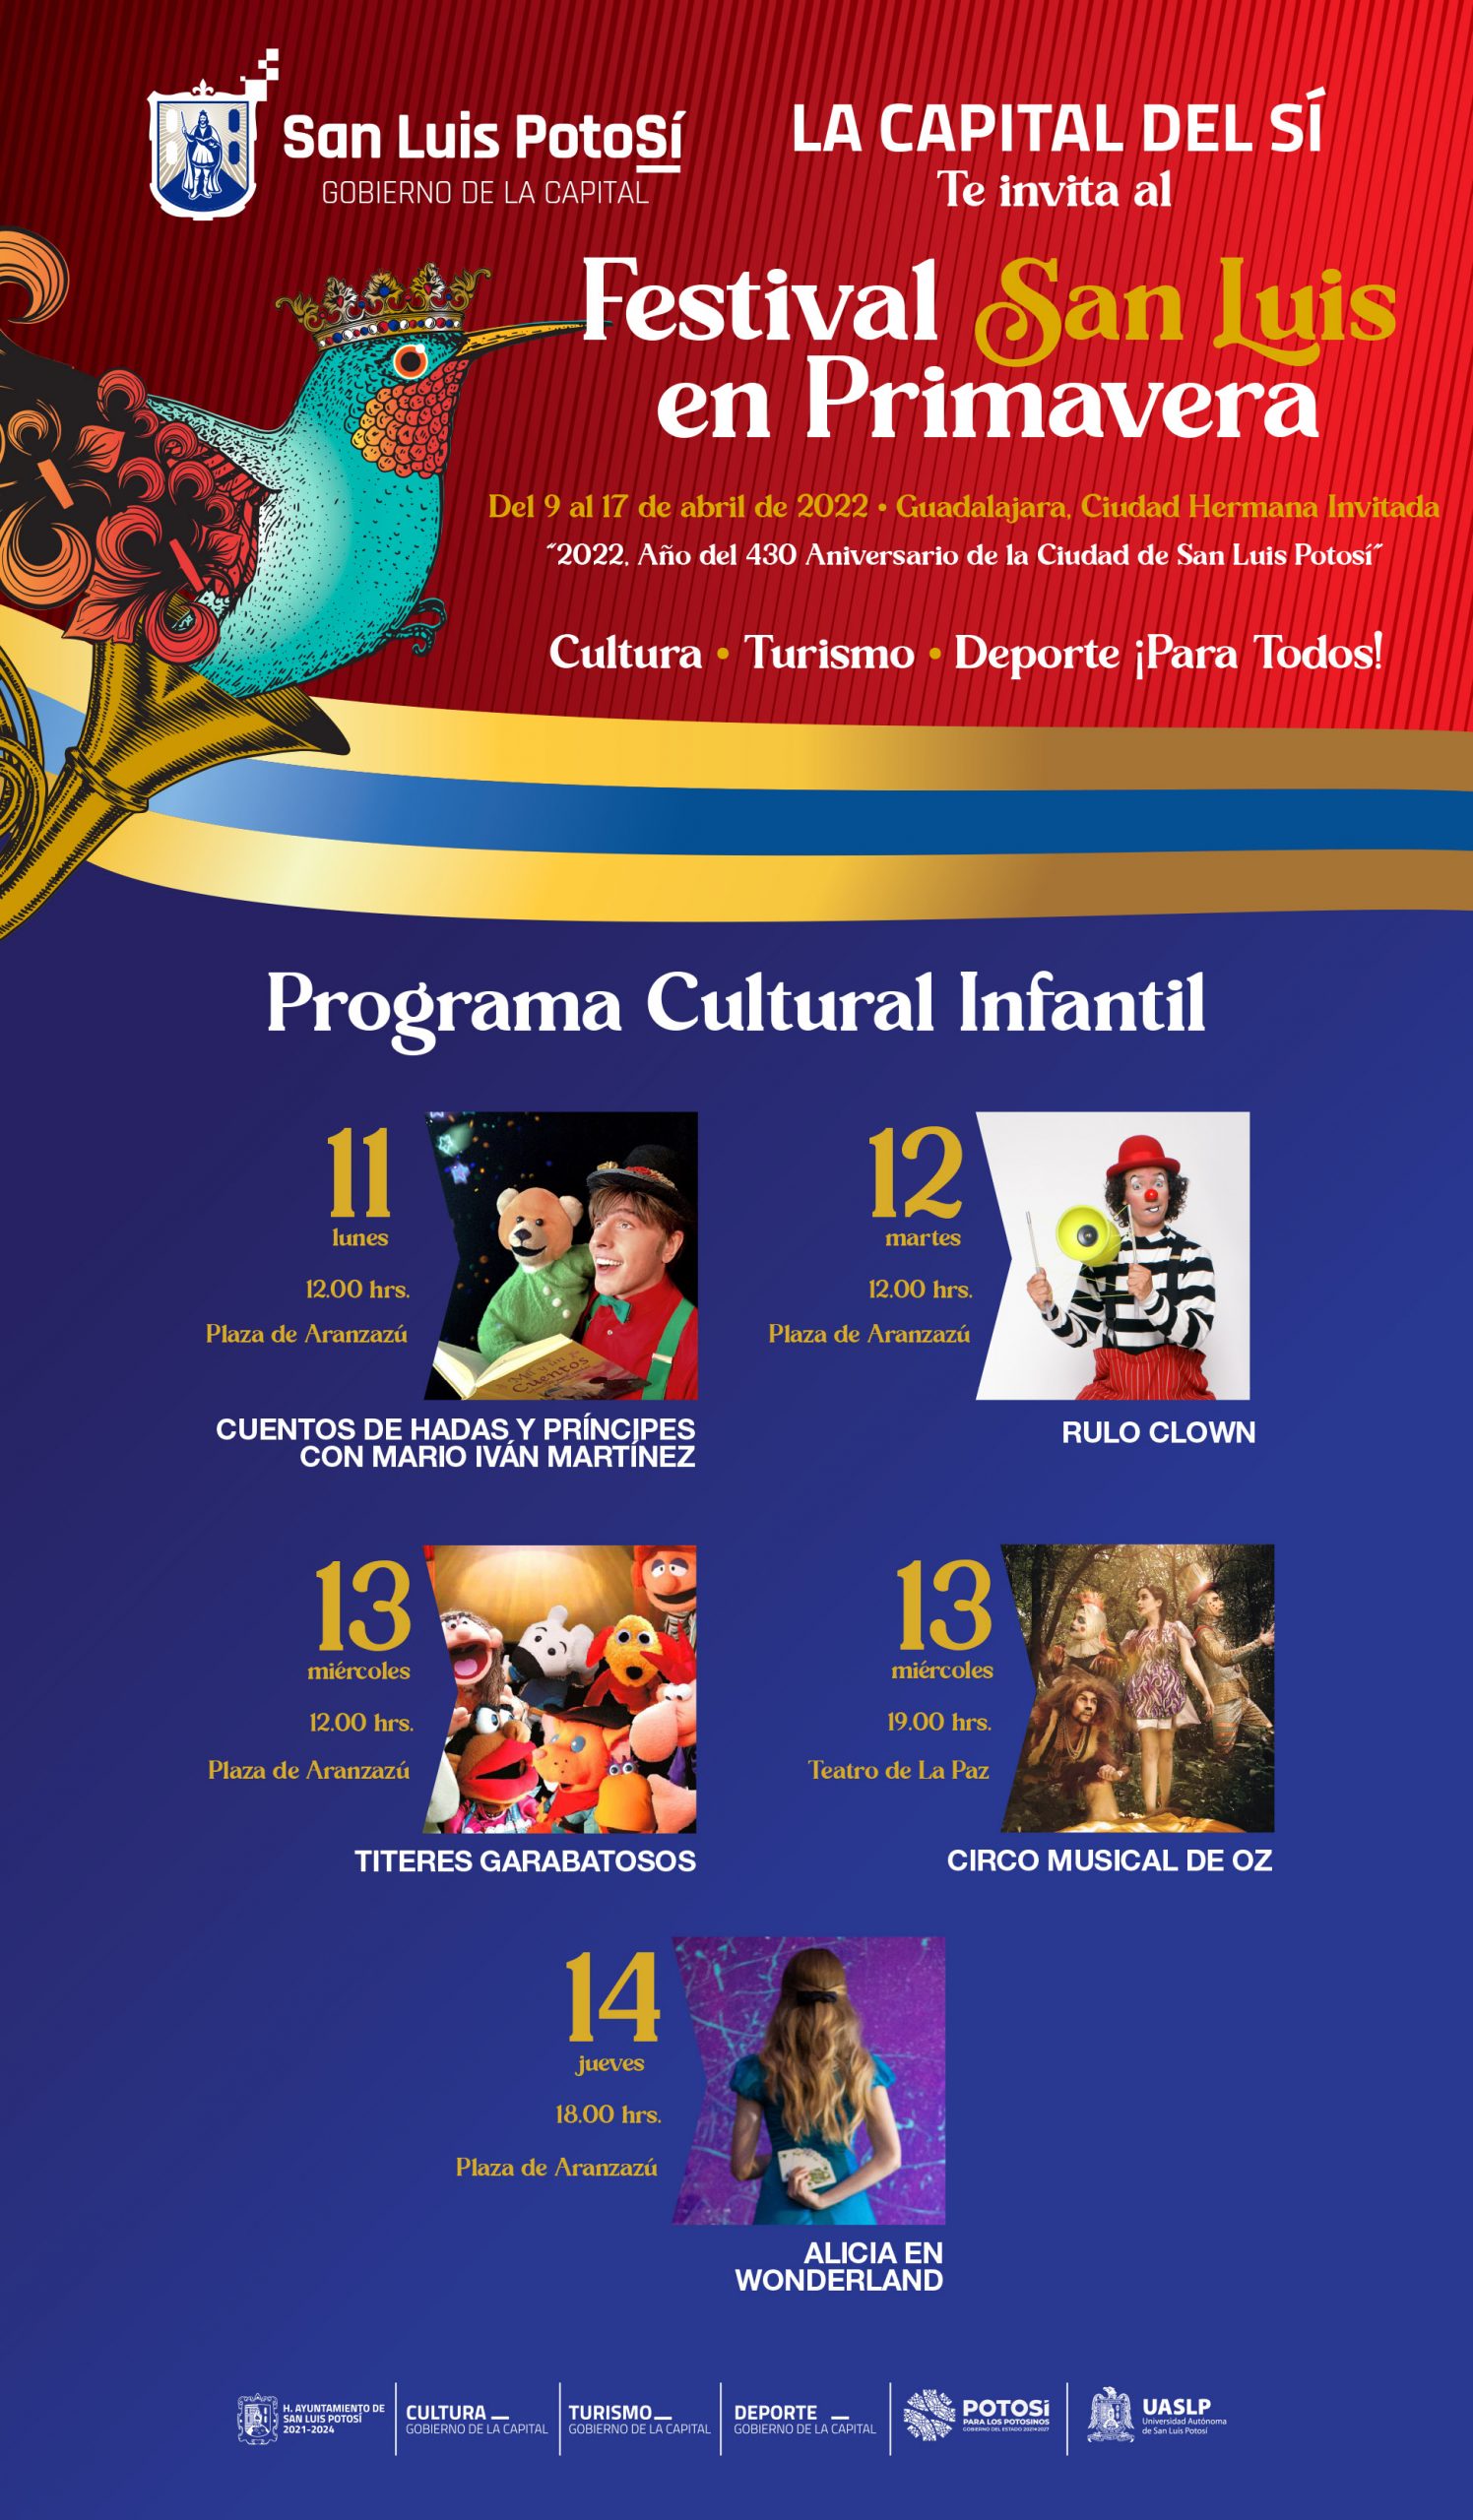 Podrán encontrar un Programa Cultural Infantil gratuito dentro del Festival San Luis en Primavera, a fin de que no se queden en casa